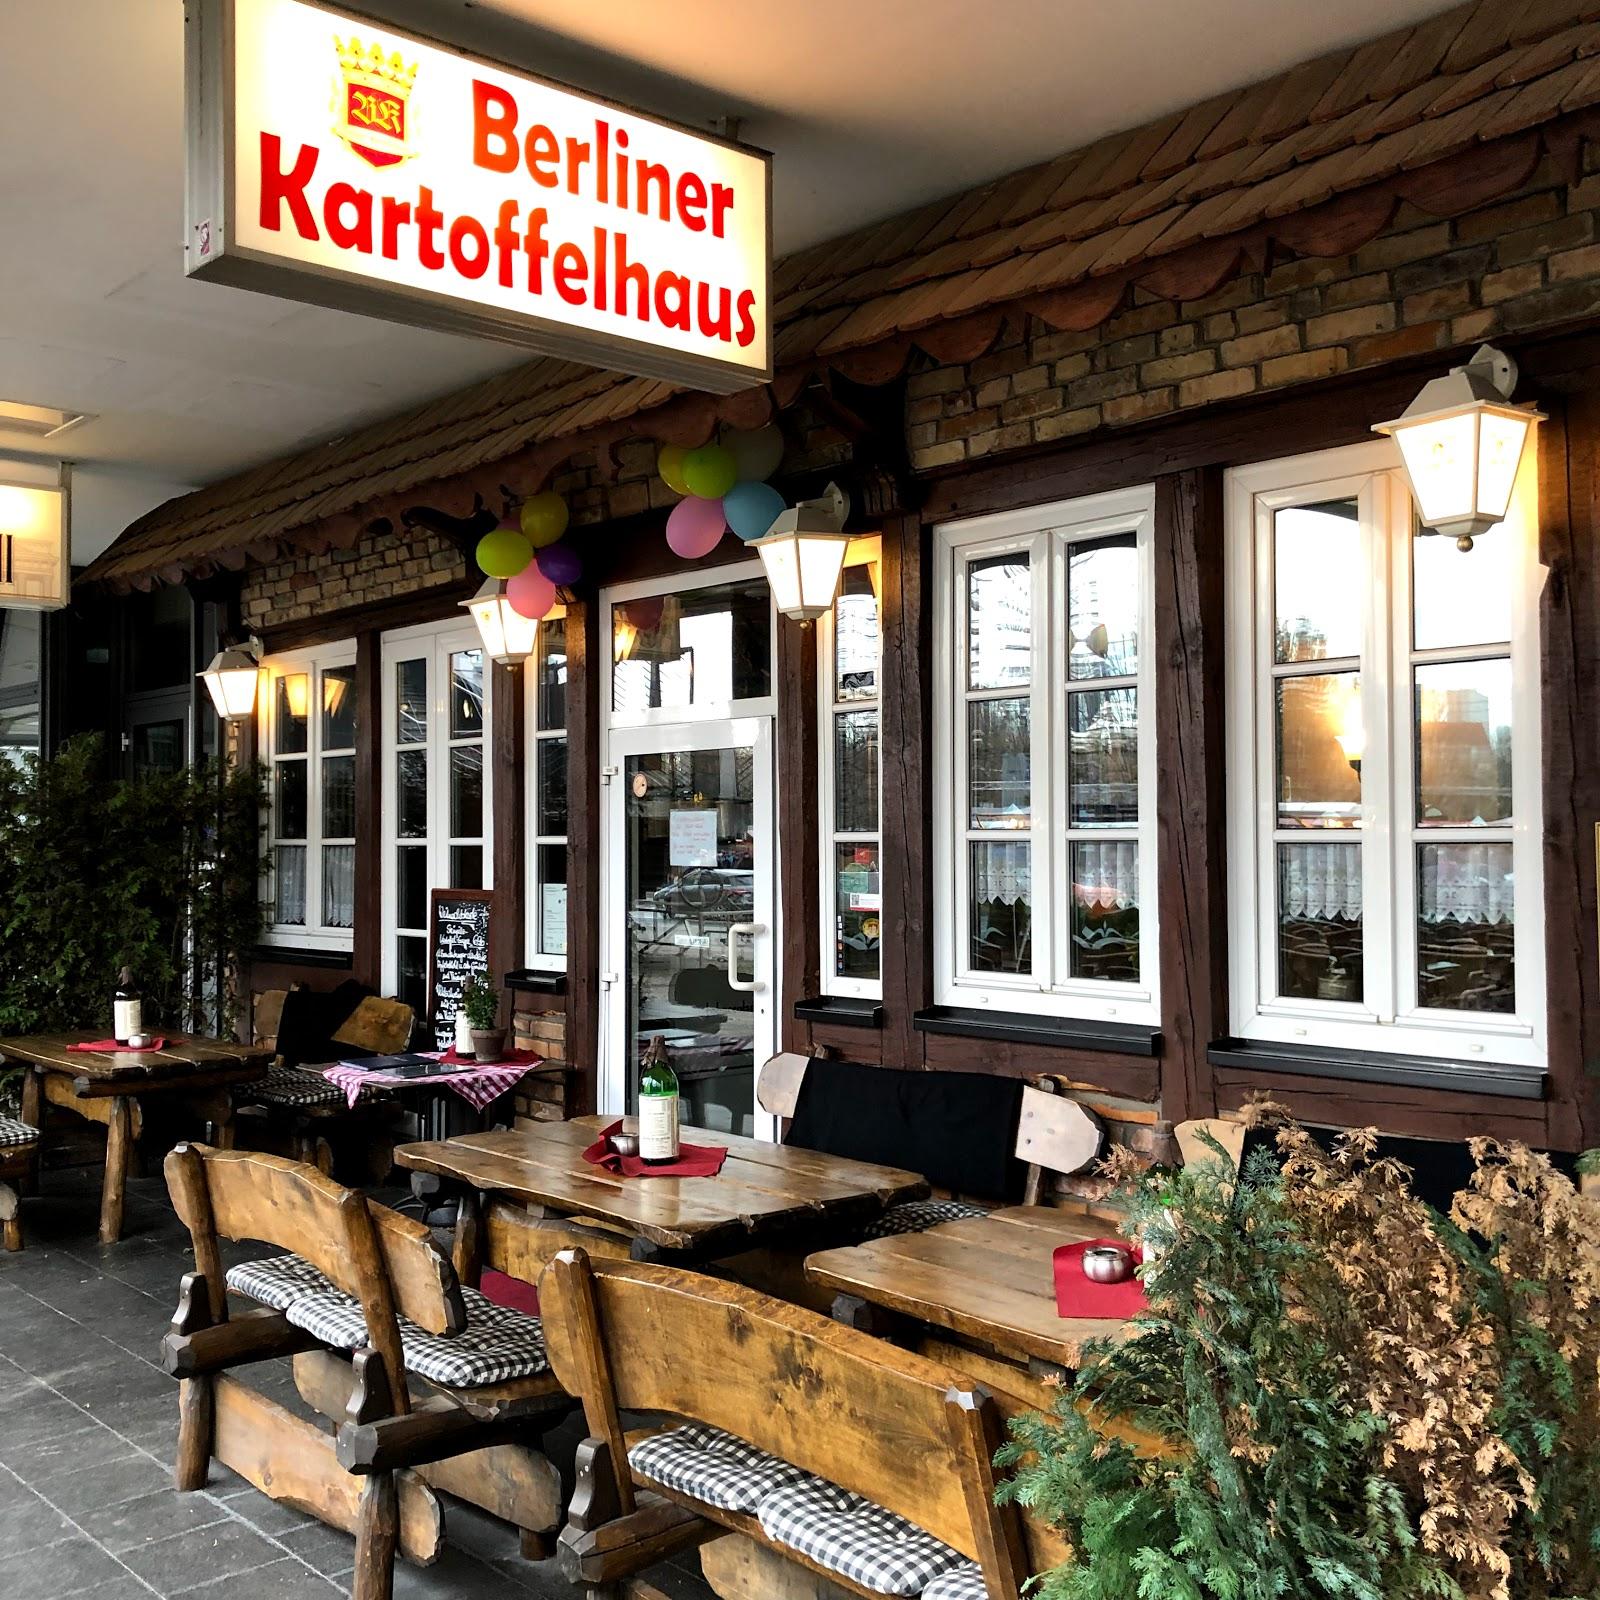 Restaurant "Berliner Kartoffelhaus" in Berlin